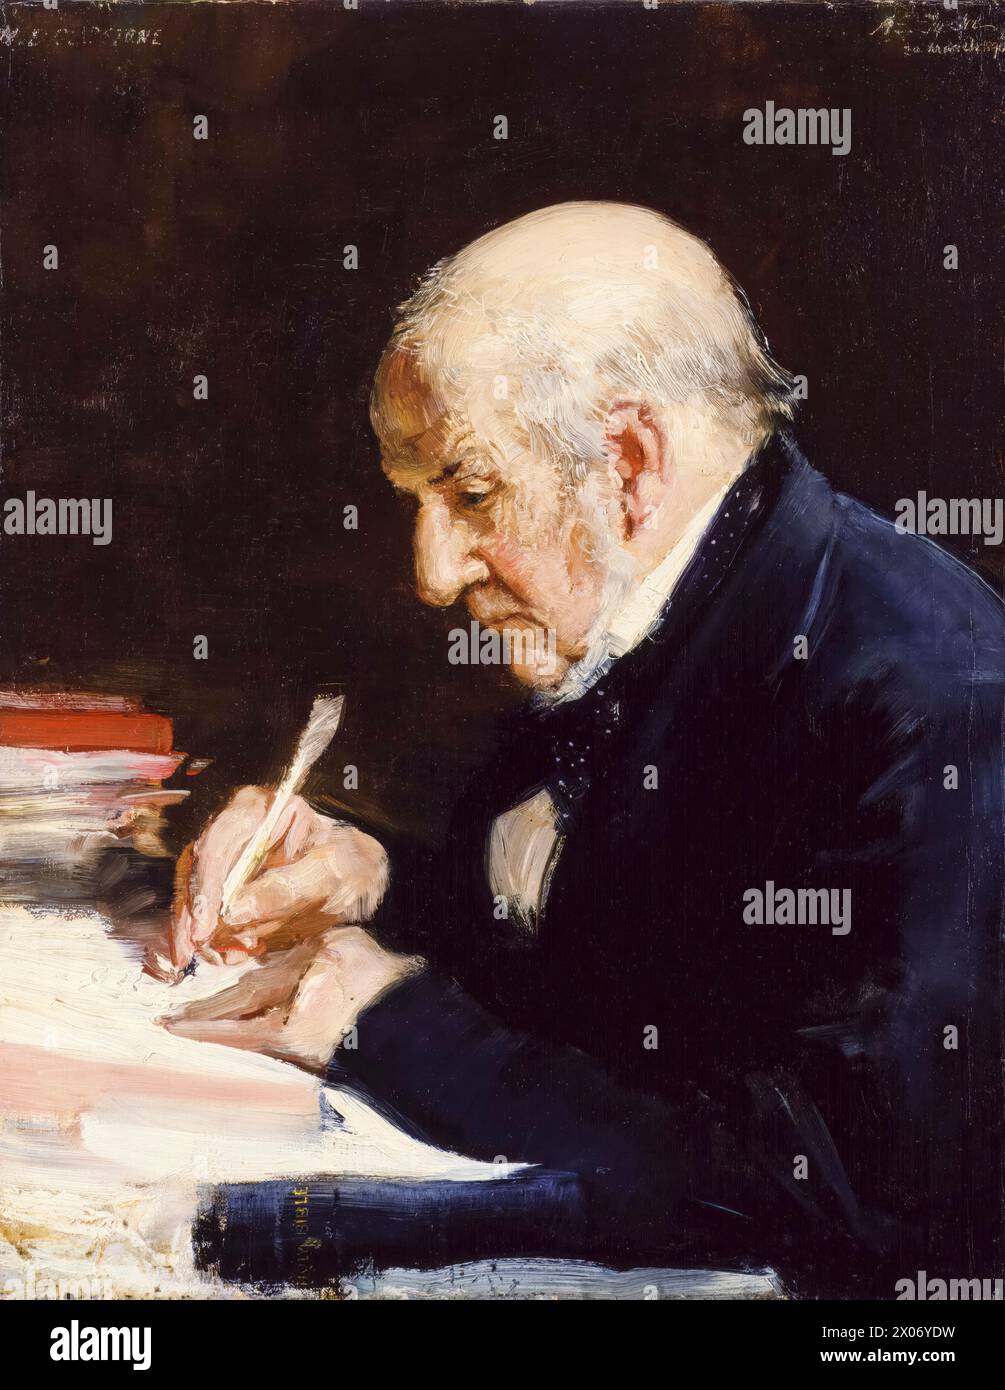 William Gladstone (William Ewart Gladstone, 1809-1898), homme politique libéral et quatre fois premier ministre du Royaume-Uni de 1868 à 1874, 1880 à 1885, février à juillet 1886 et 1892 à 1894, portrait peint à l'huile sur toile par Alfred Edward Emslie, 1890 Banque D'Images